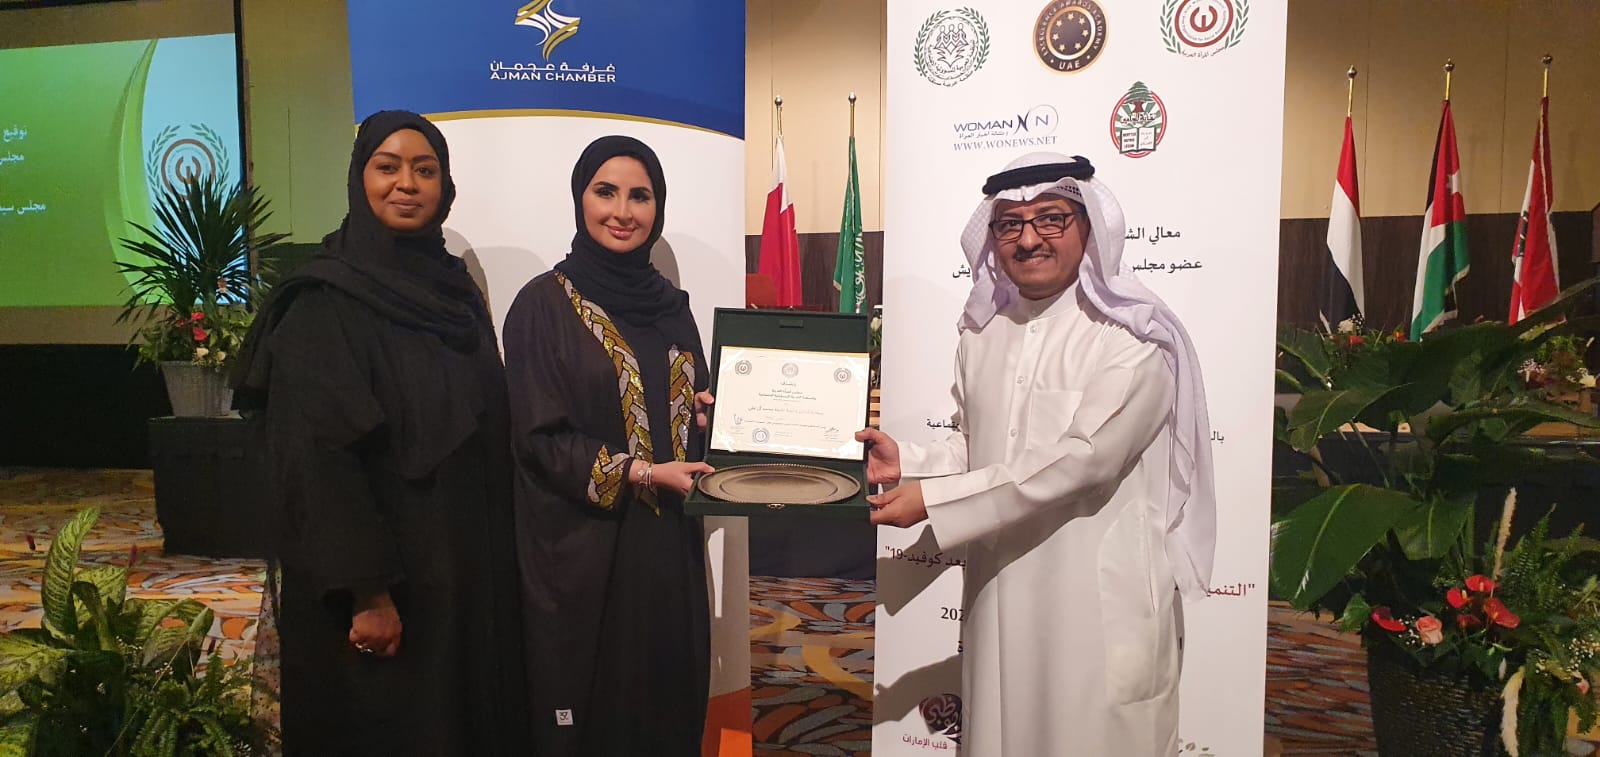 مجلس المرأة العربية يُكرم الدكتورة آمنة خليفة بدرع التميز الذهبي ٢٠٢٢